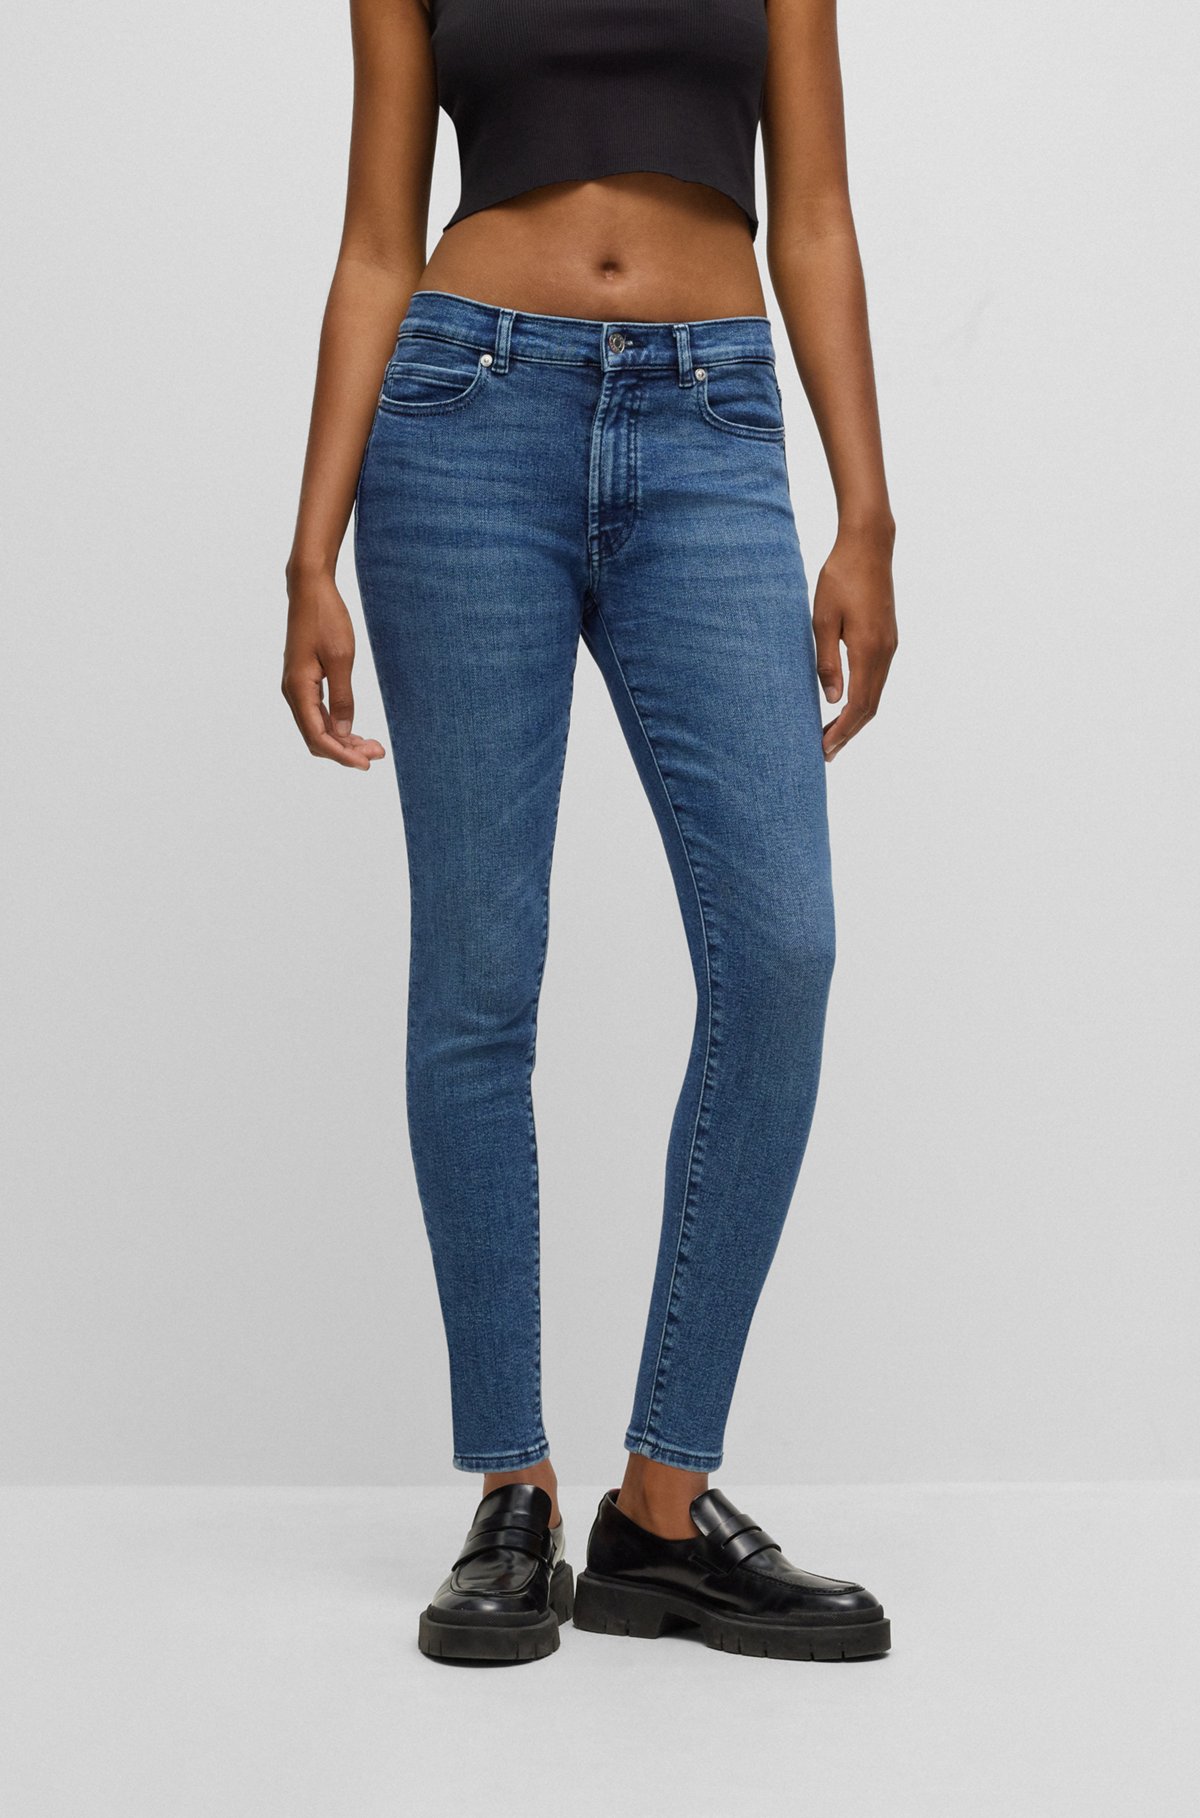 HUGO - Extra-slim-fit jeans in blue super-stretch denim